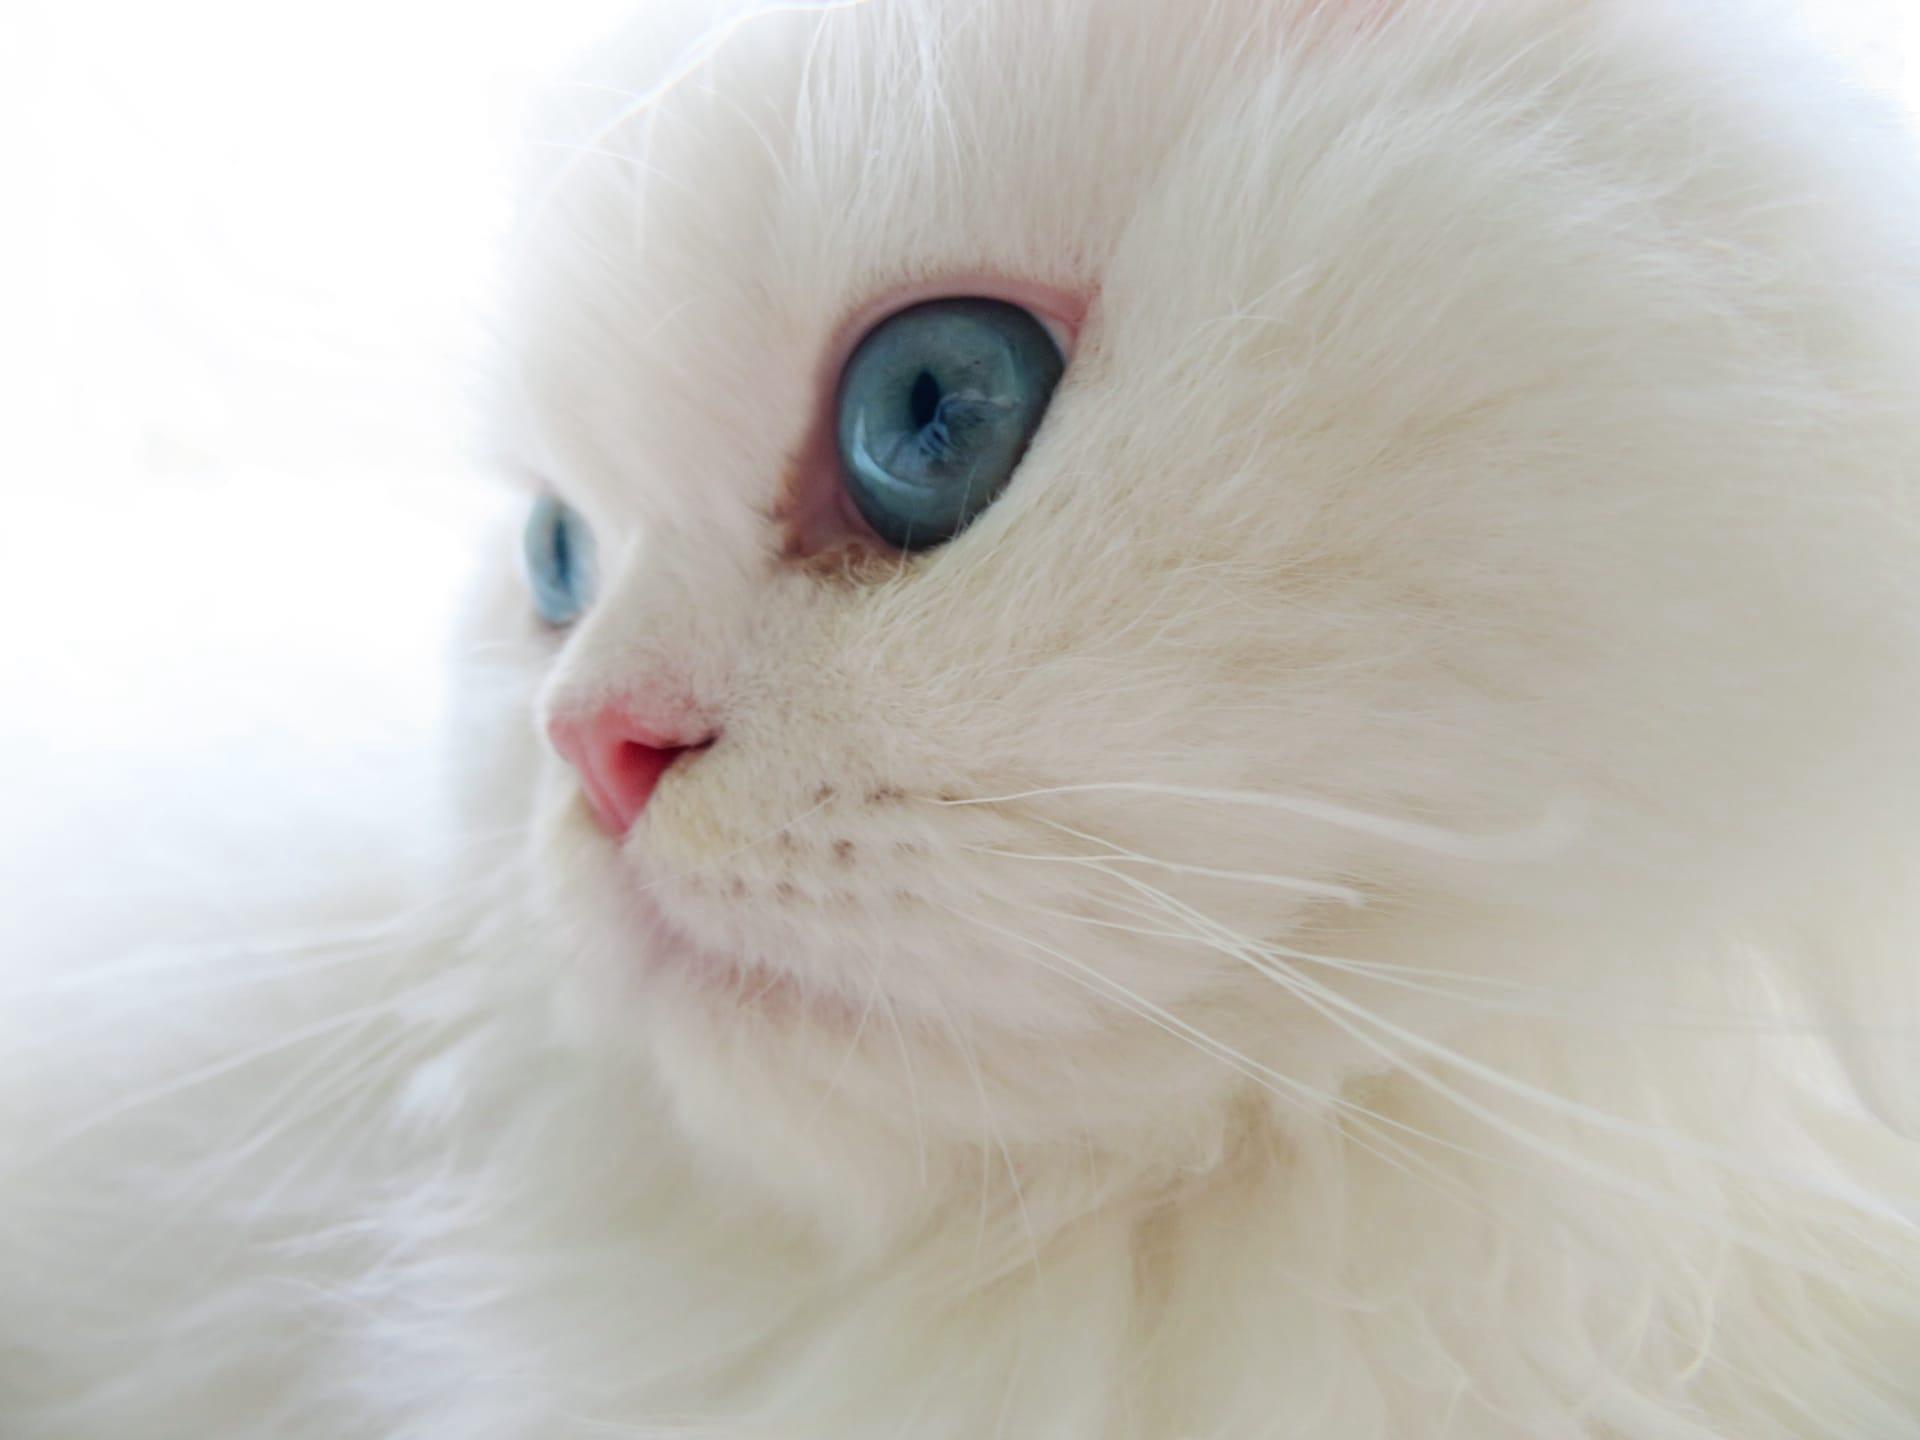 Turkish angora cat pictures